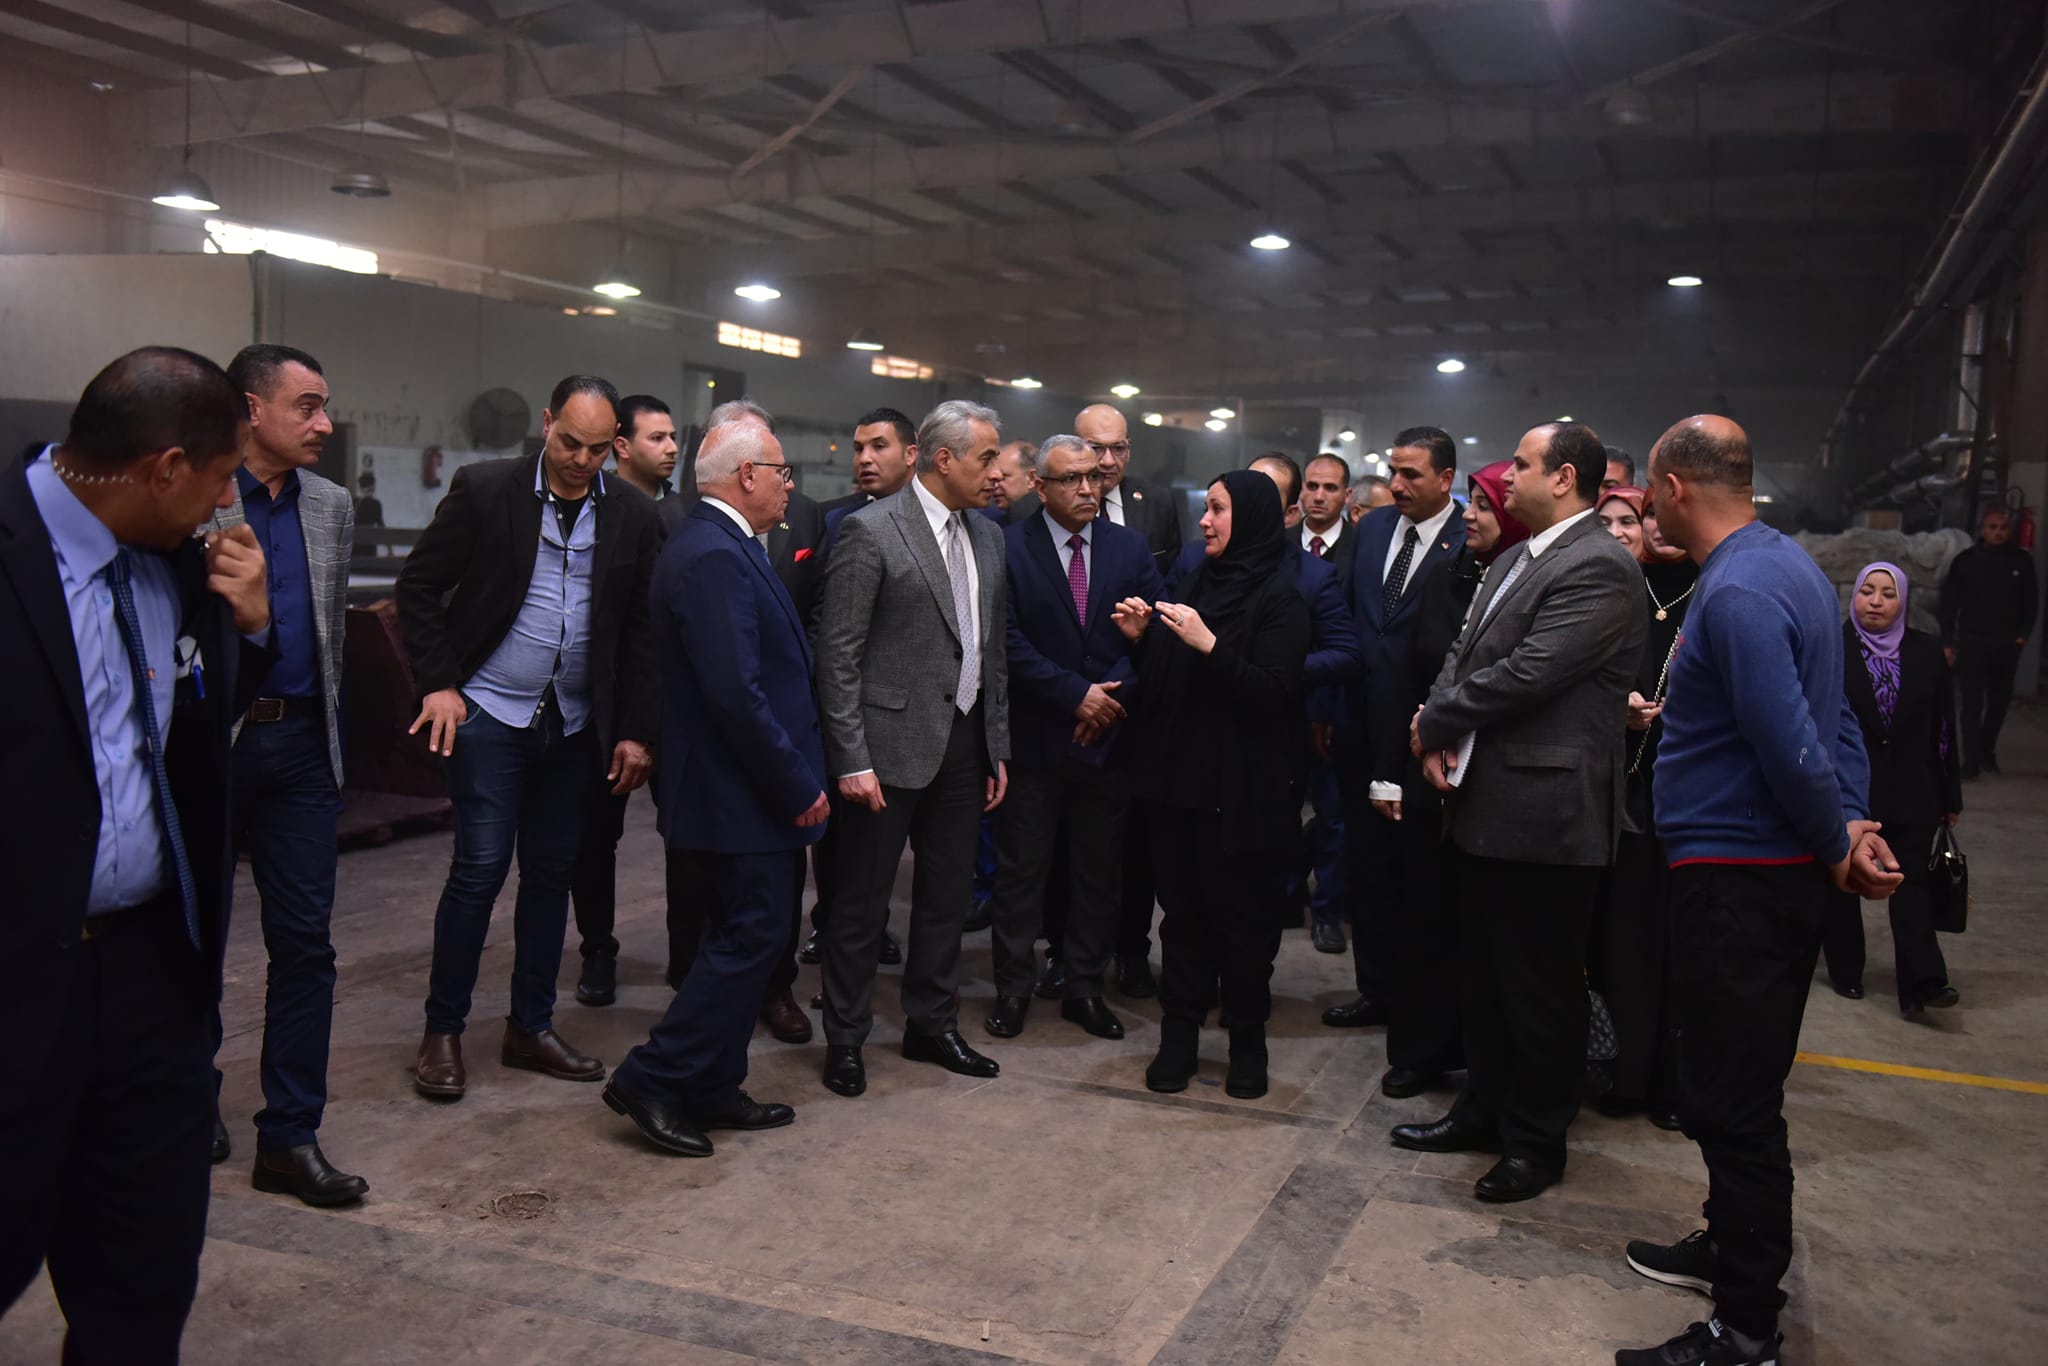 وزير العمل يصطحب محافظ بورسعيد لجولة داخل مصنع للبطاطين والسجاد والملابس الجاهزة (صور) 1